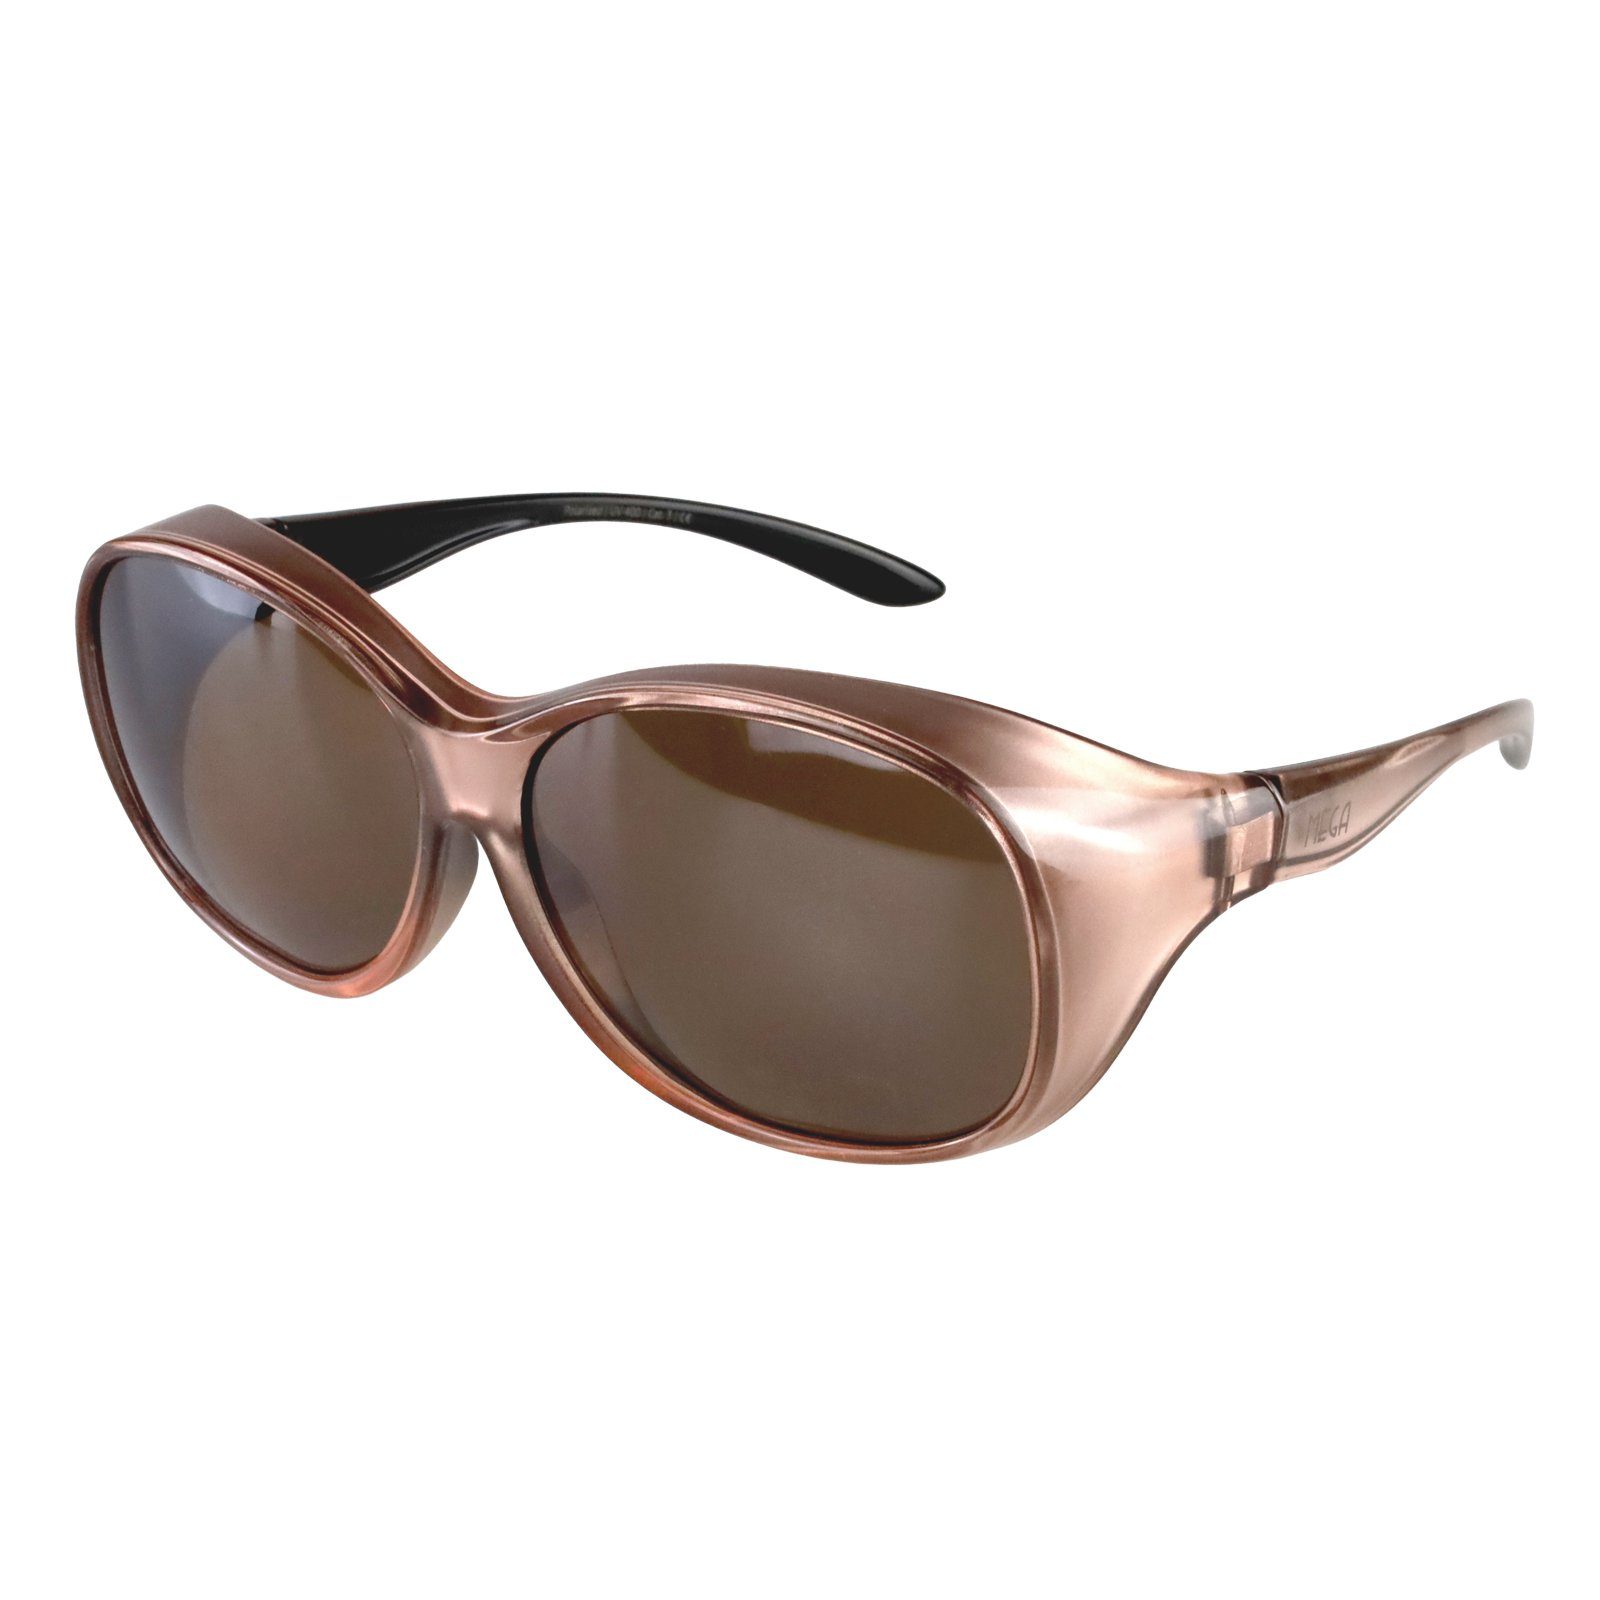 ActiveSol SUNGLASSES Sonnenbrille Überziehsonnenbrille Damen MEGA (inklusive Schiebebox und Brillenputztuch) Vintage Stil Rosé